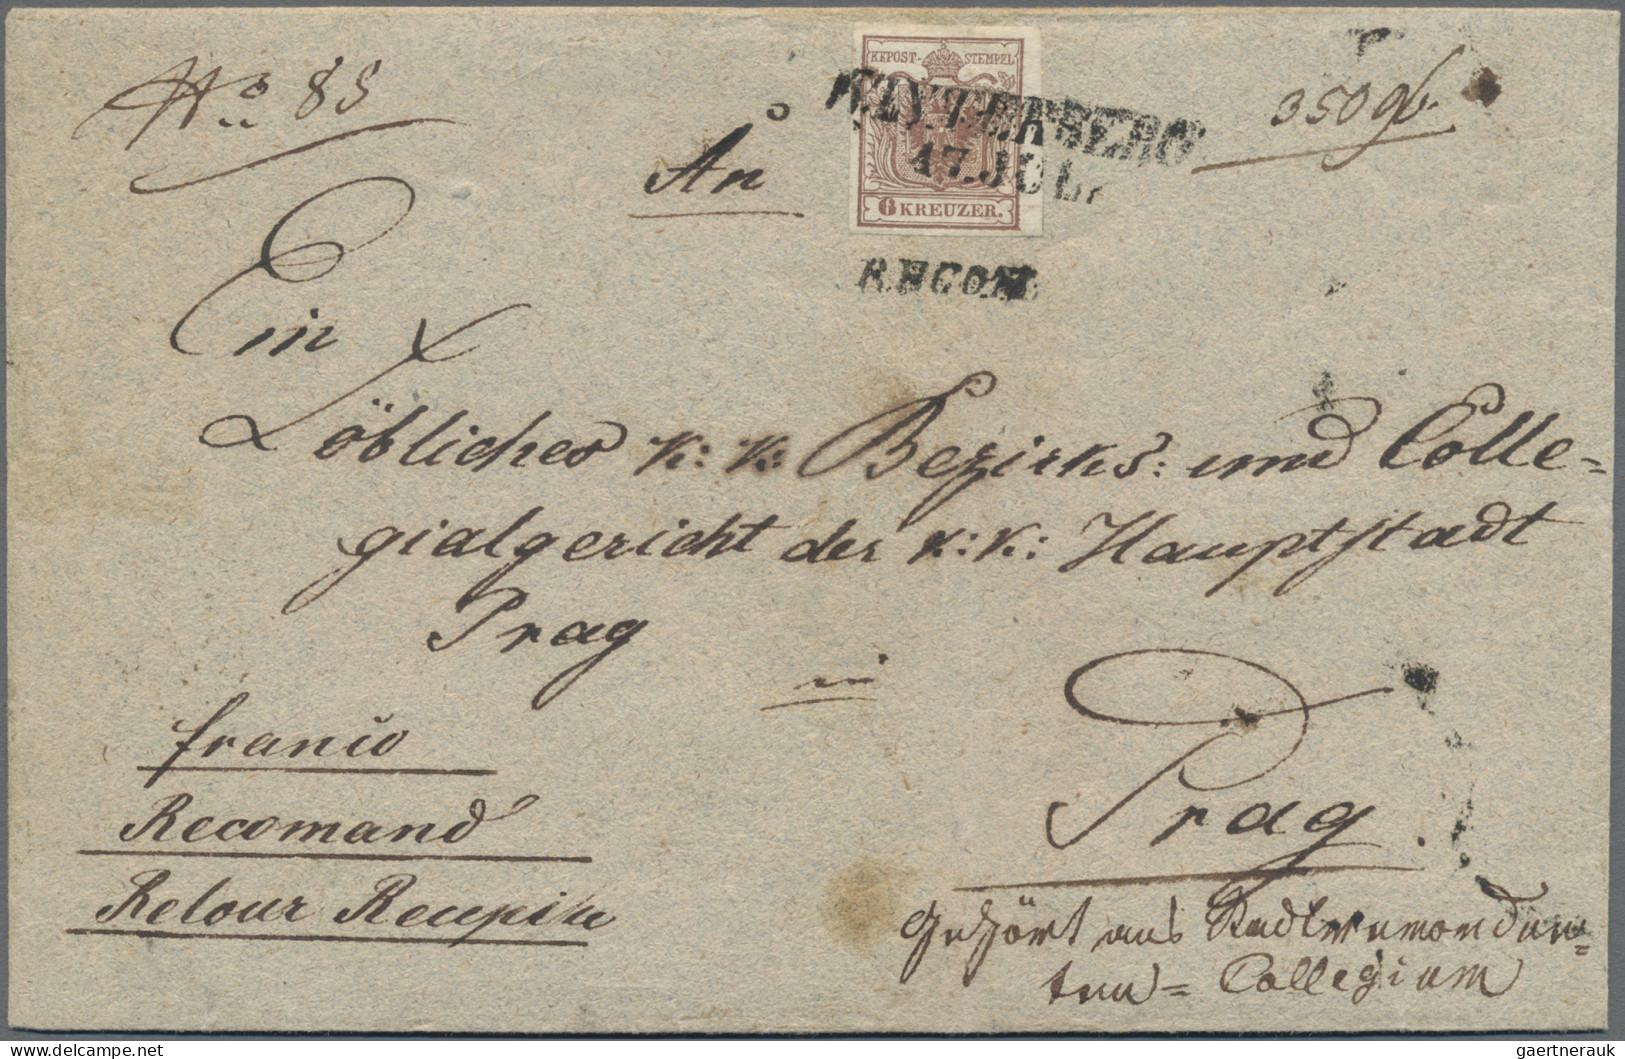 Österreich: 1850, 6 Kr. Braun, Handpapier, Type I, Vorderseitig Auf Reco-Brief M - Covers & Documents